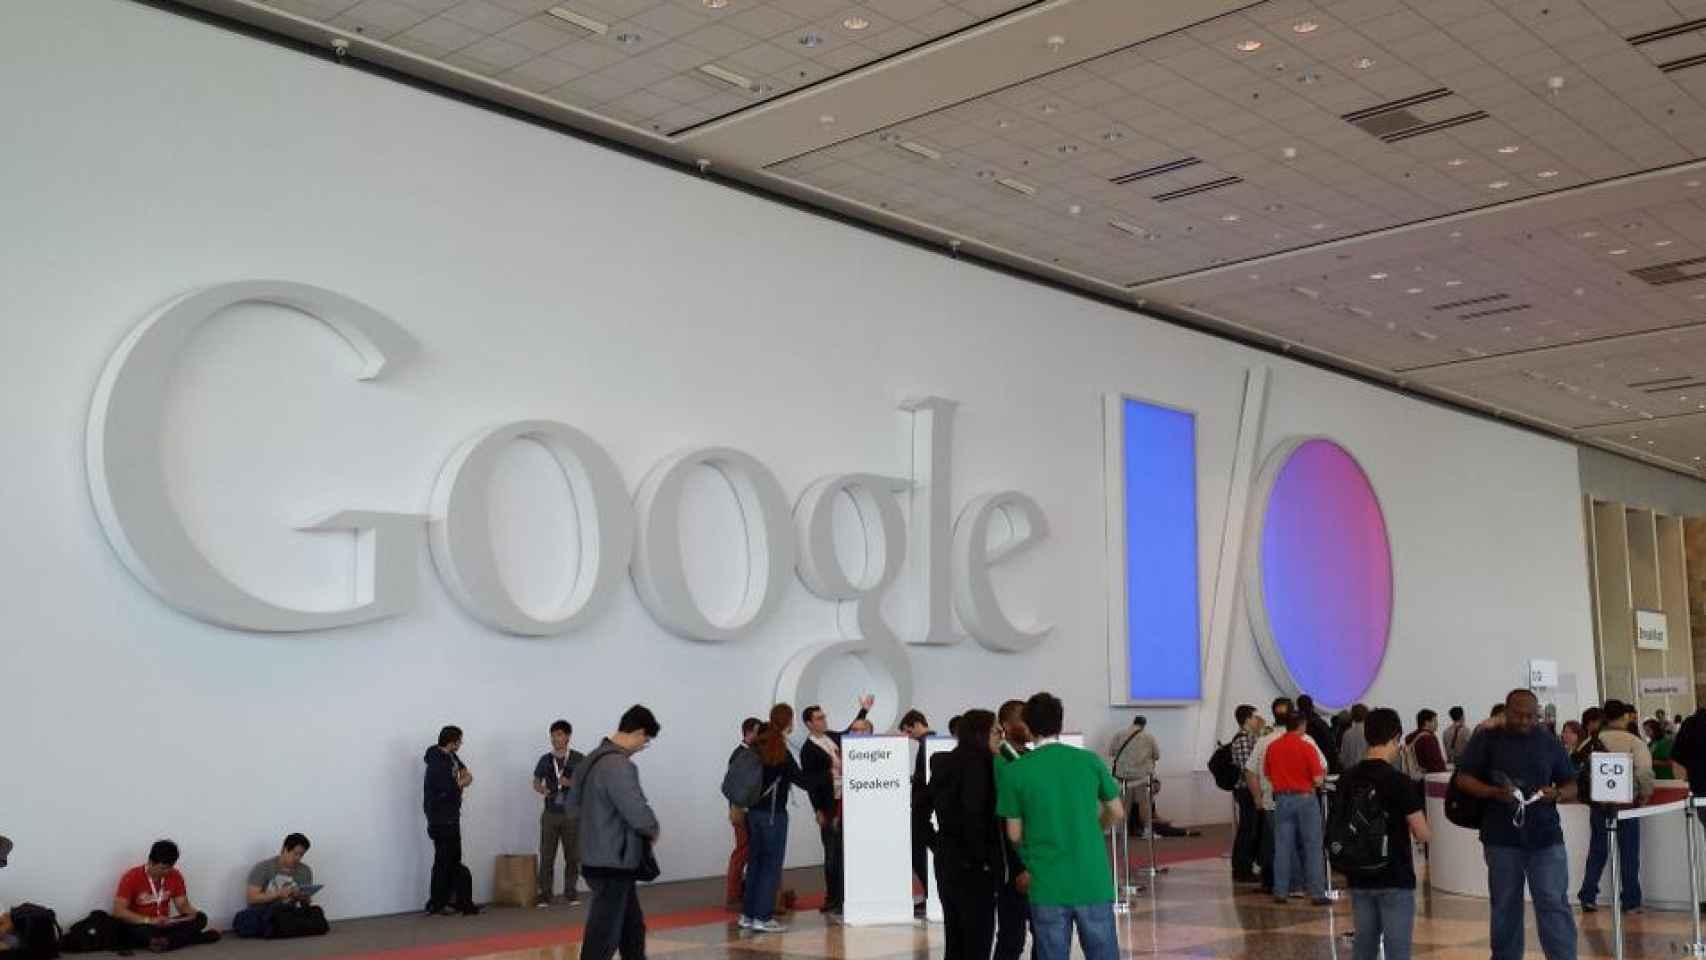 El Google I/O 2014 se celebrará el 25 y 26 de junio